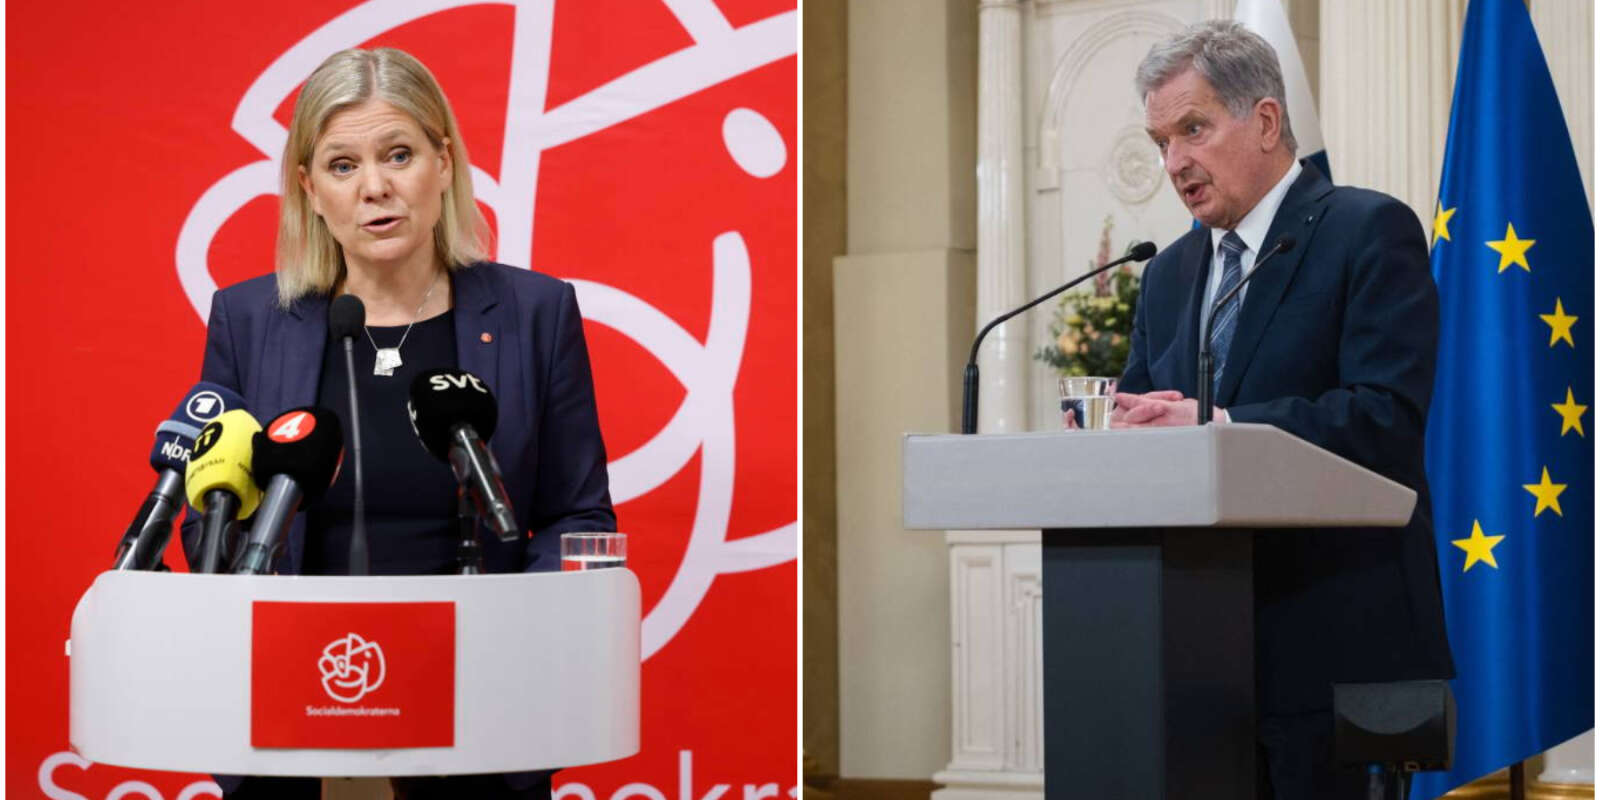 La première ministre suédoise Magdalena Andersson et le président finlandais Sauli Niinistö lors de leur conférence de presse respectives pour demander l’adhésion de leur pays à l’OTAN, à Stockholm et à Helsinki, samedi 15 mai.